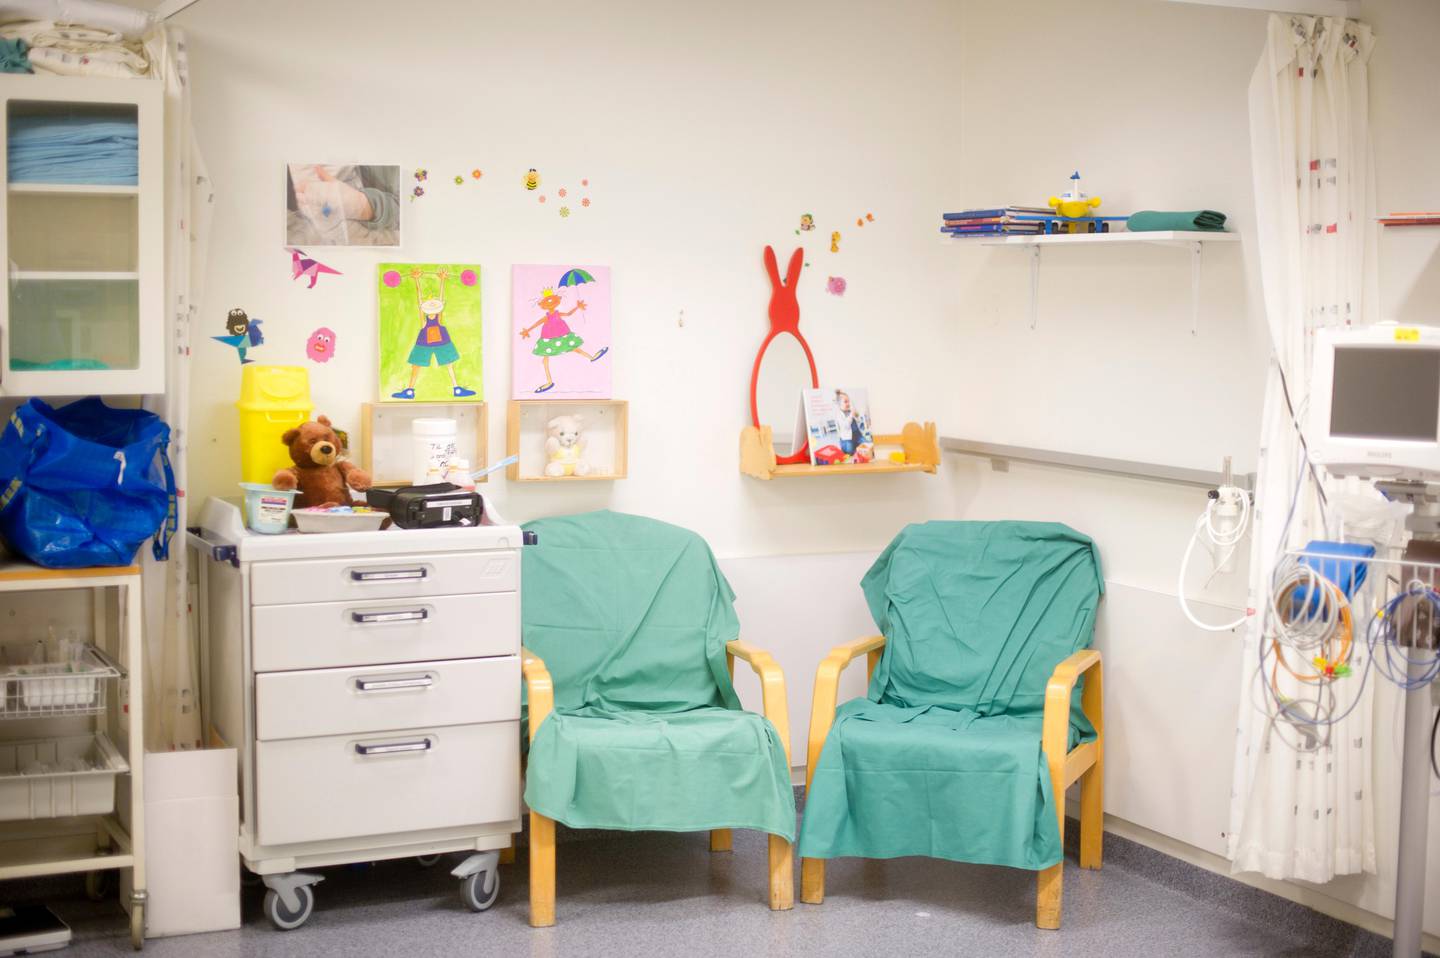 Stavanger universitetssjukehus har iverksatt en rekke tiltak for å trygge og oppmuntre barn som skal opereres. Det har gitt gode resultater. I denne kroken settes venflon på barna. VR-briller og iPad avleder oppmerksomheten fra stikket. 
